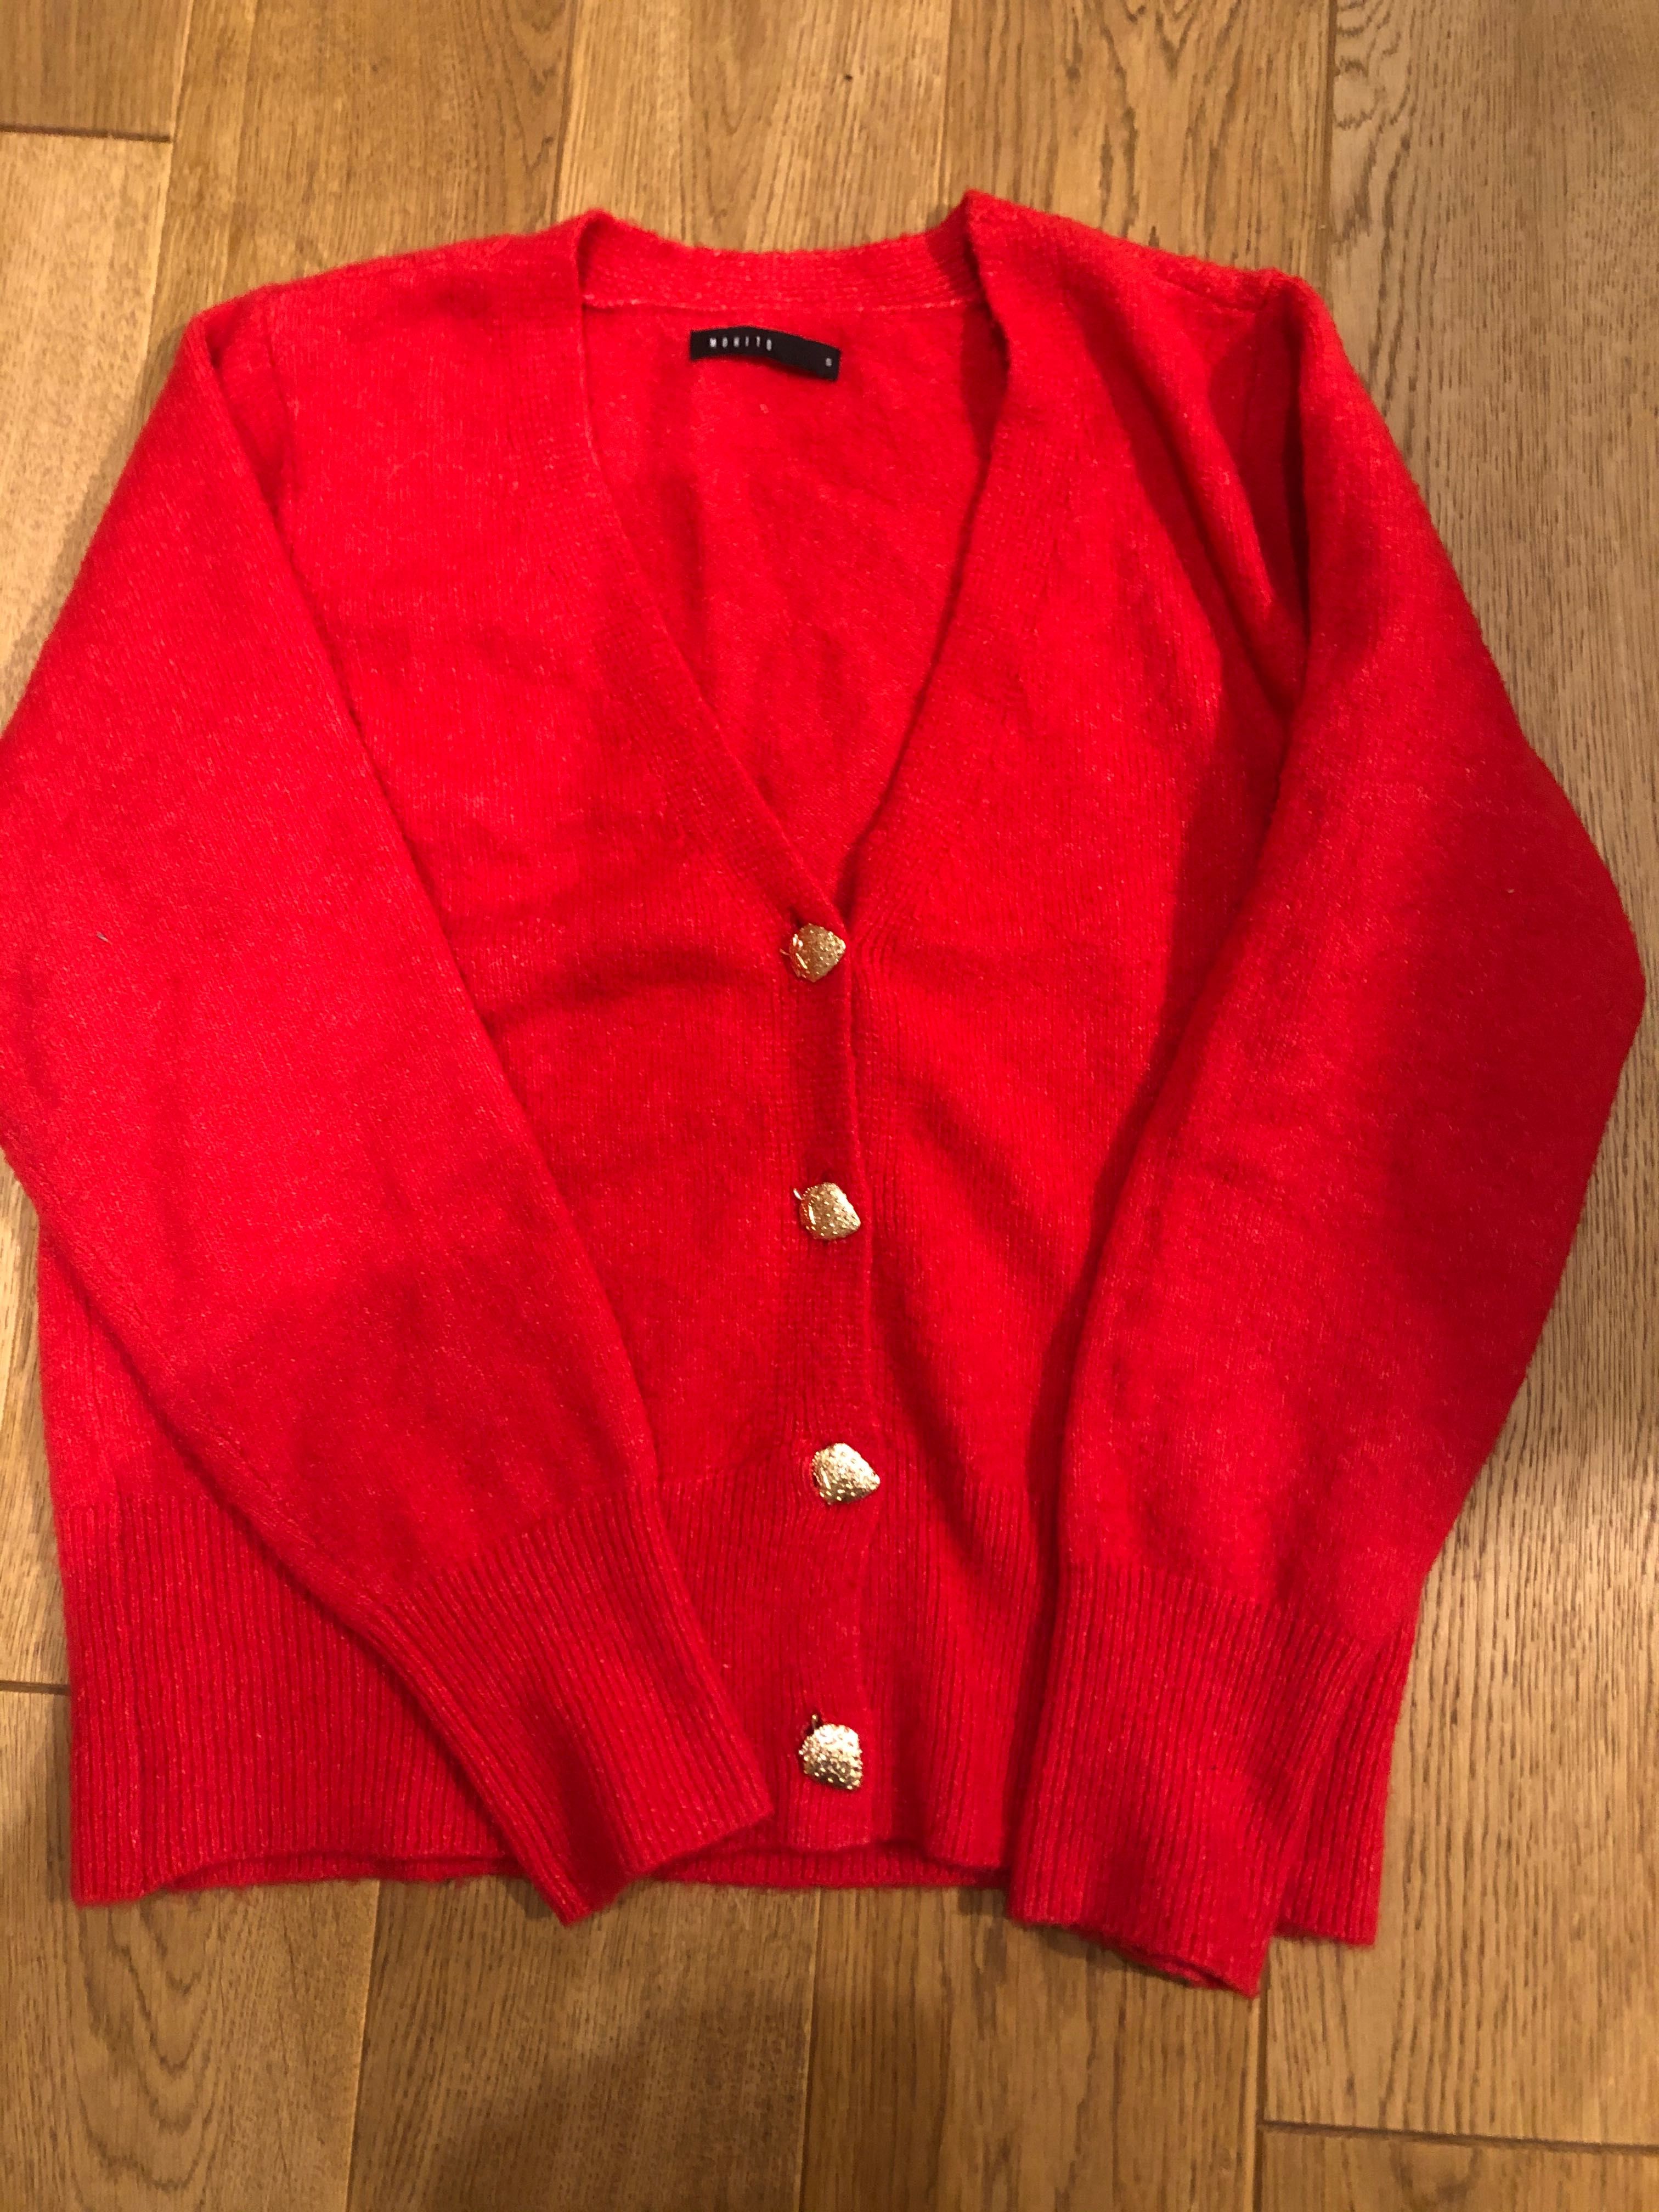 Czerwony sweterek, zapinany, mohito, rozmiar M/L, cena 50,00zl